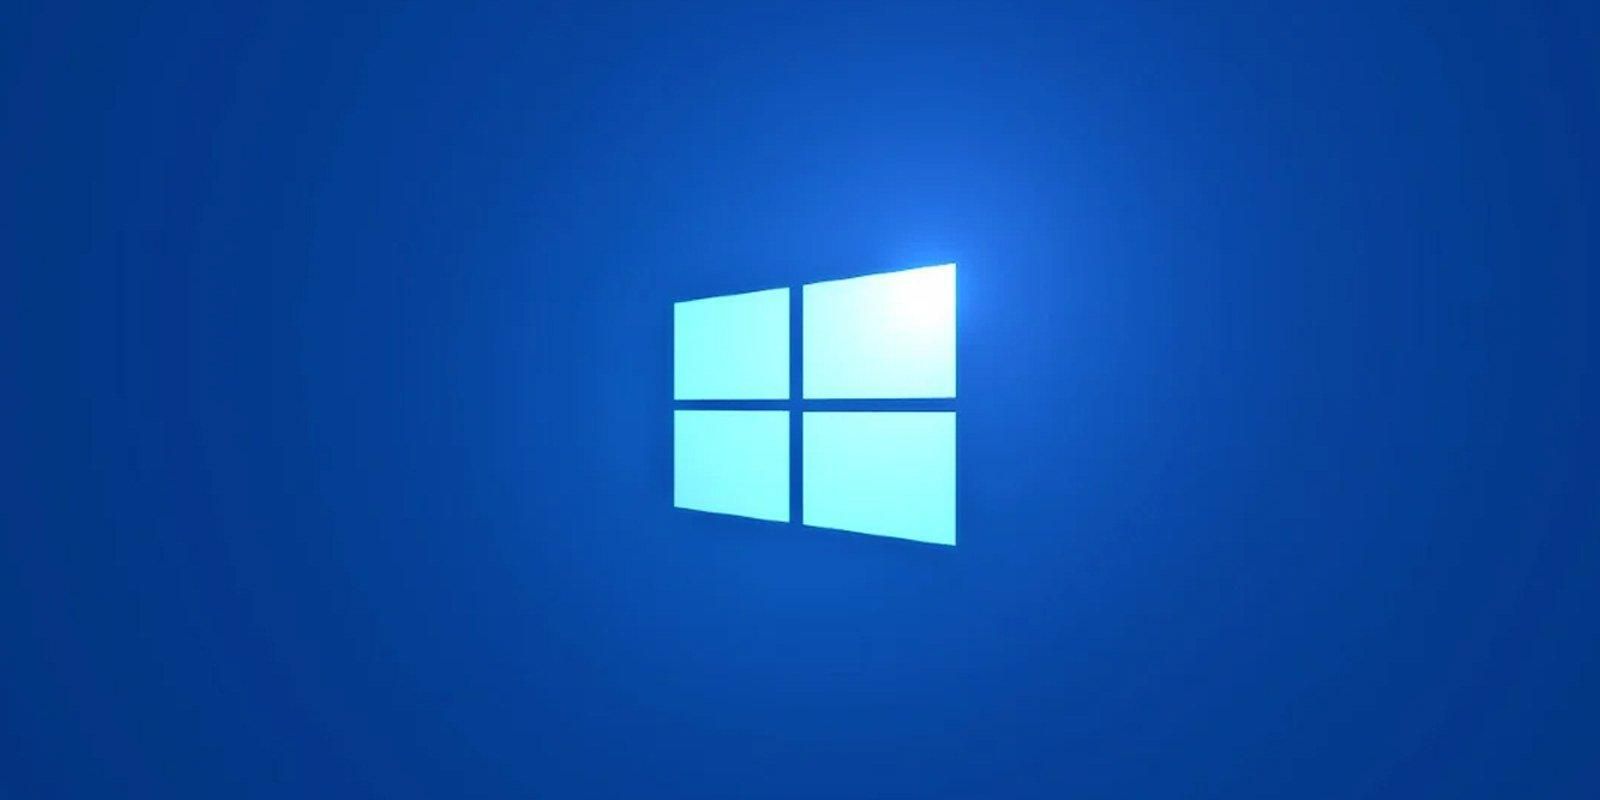 Windows наступного покоління: дата презентації оновленої платформи